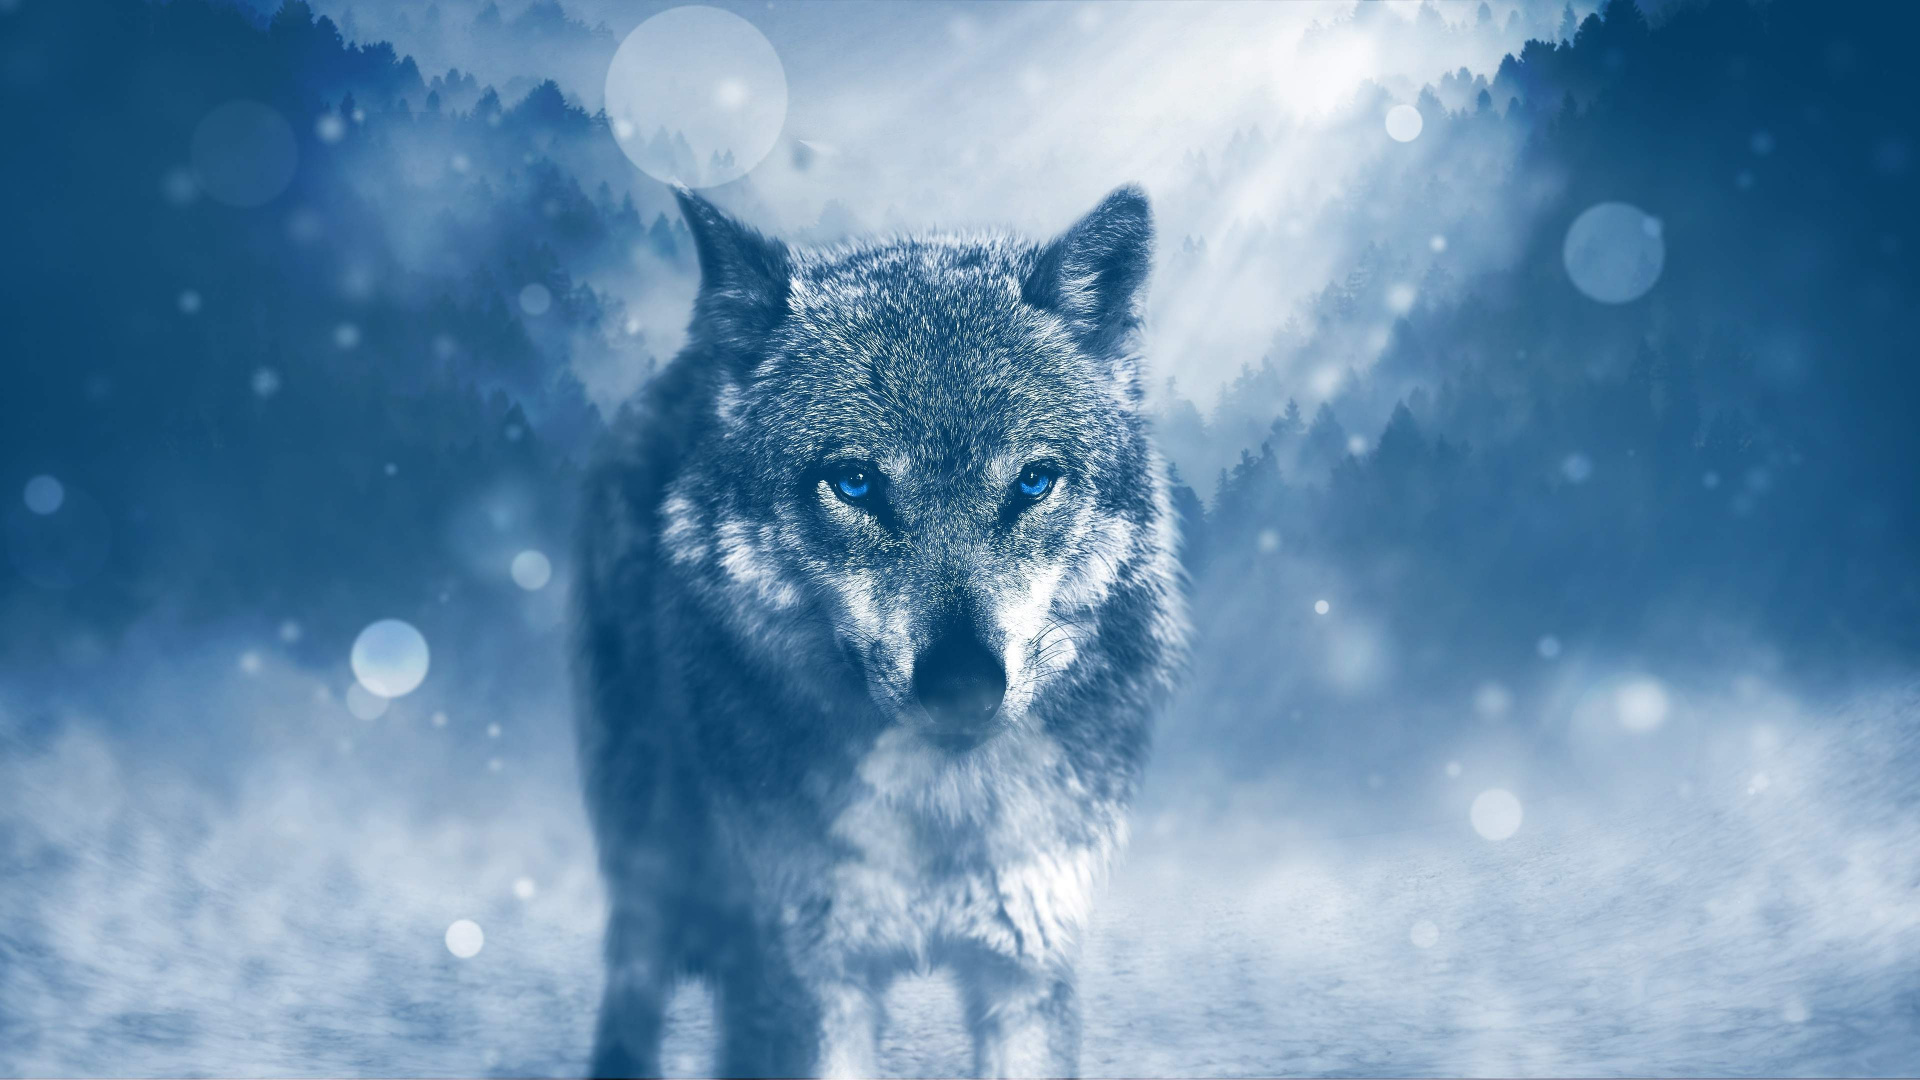 Grauer Wolf Auf Schneebedecktem Boden. Wallpaper in 1920x1080 Resolution